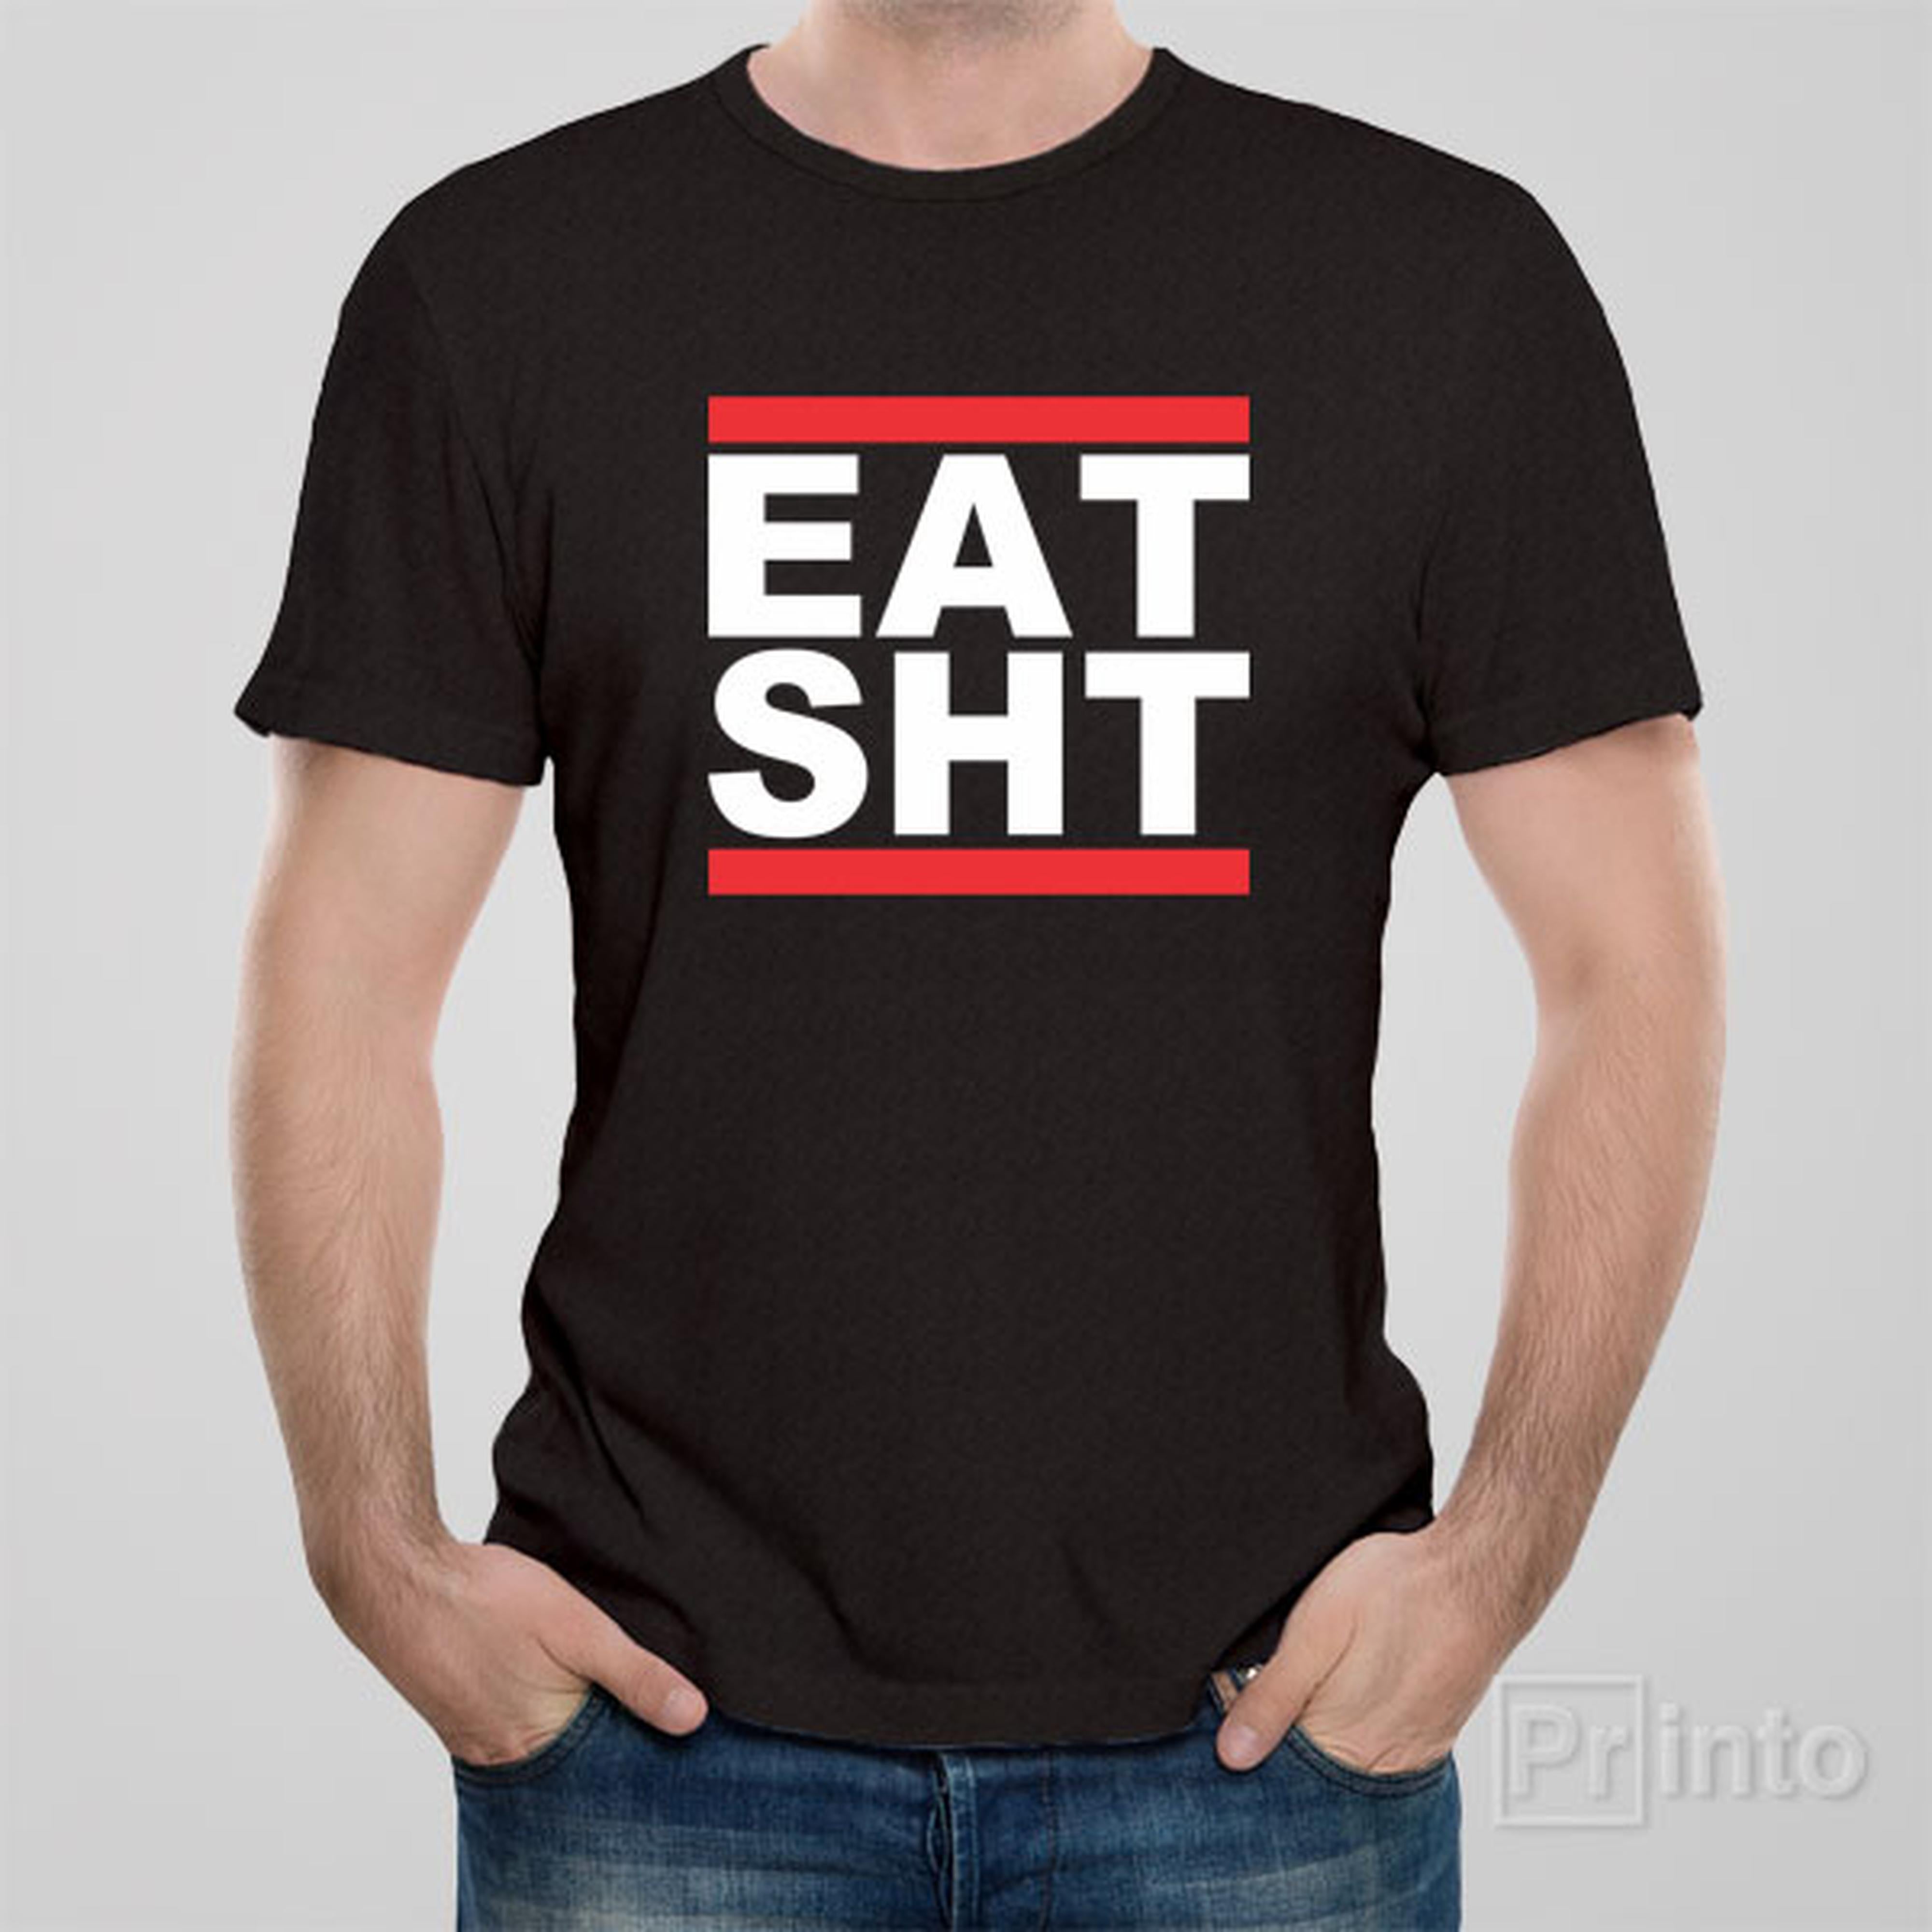 eat-sht